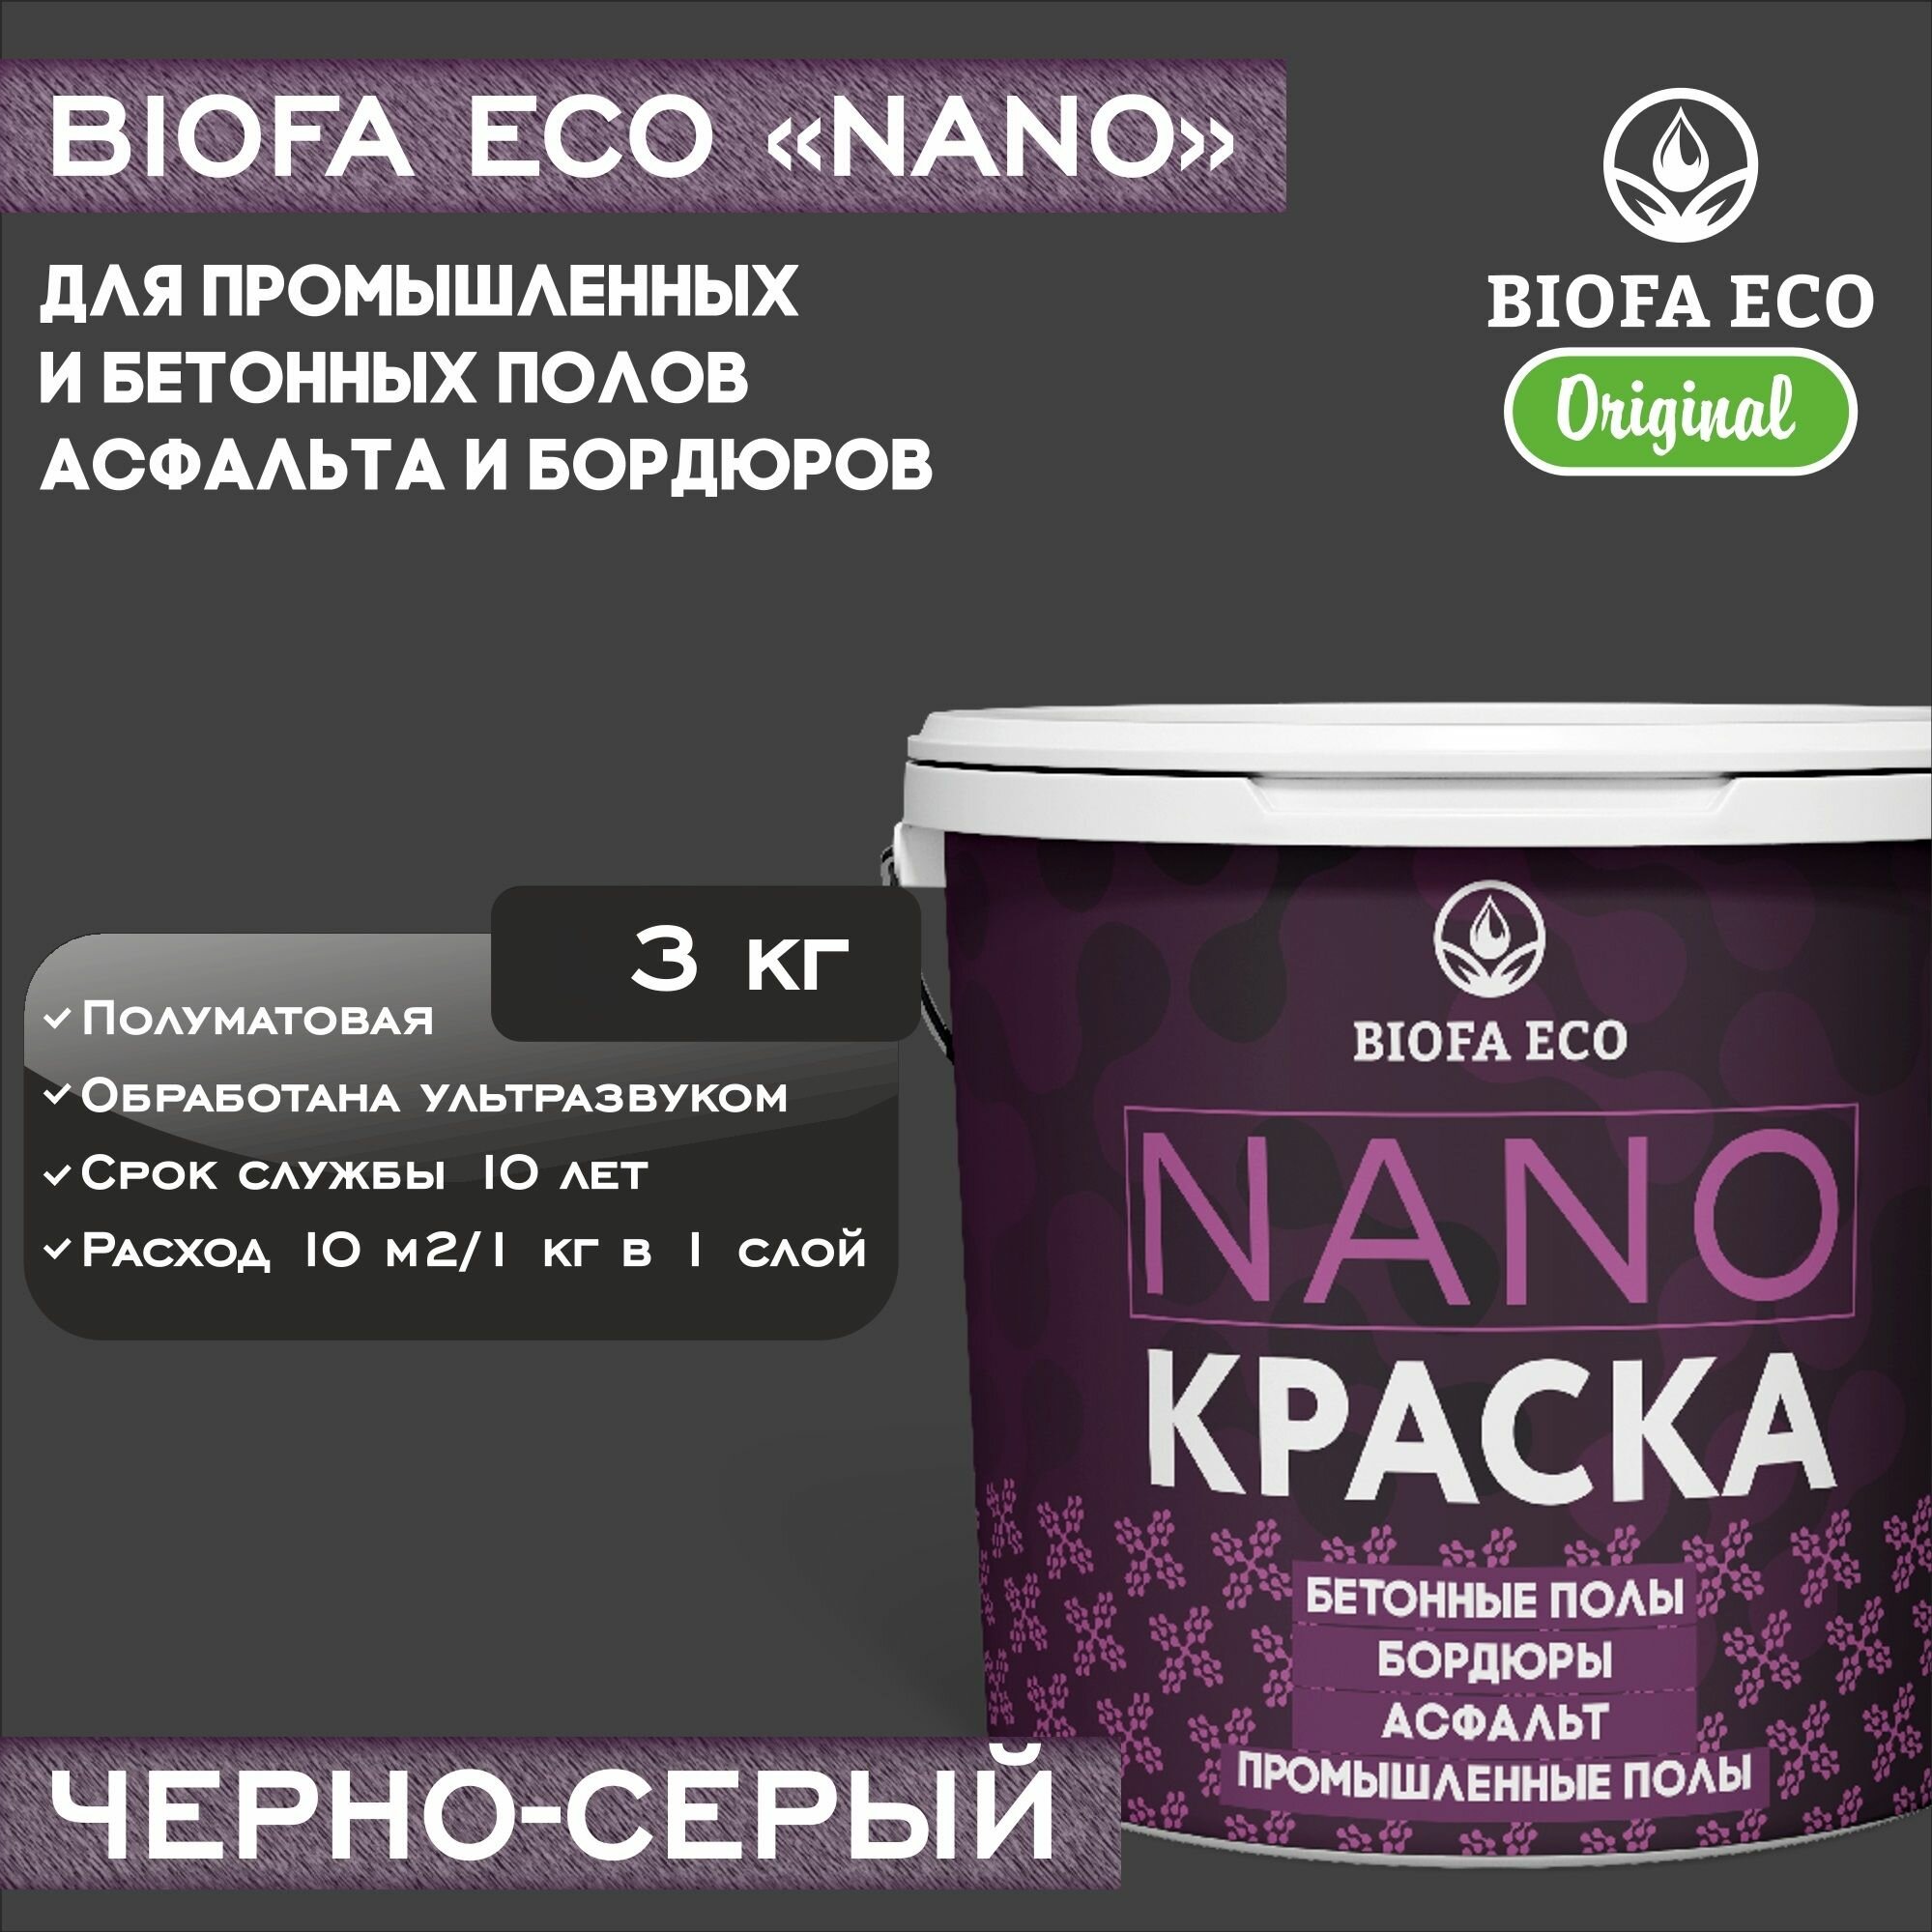 Краска BIOFA ECO NANO для промышленных и бетонных полов, бордюров, асфальта, адгезионная, полуматовая, цвет черно-серый, 3 кг